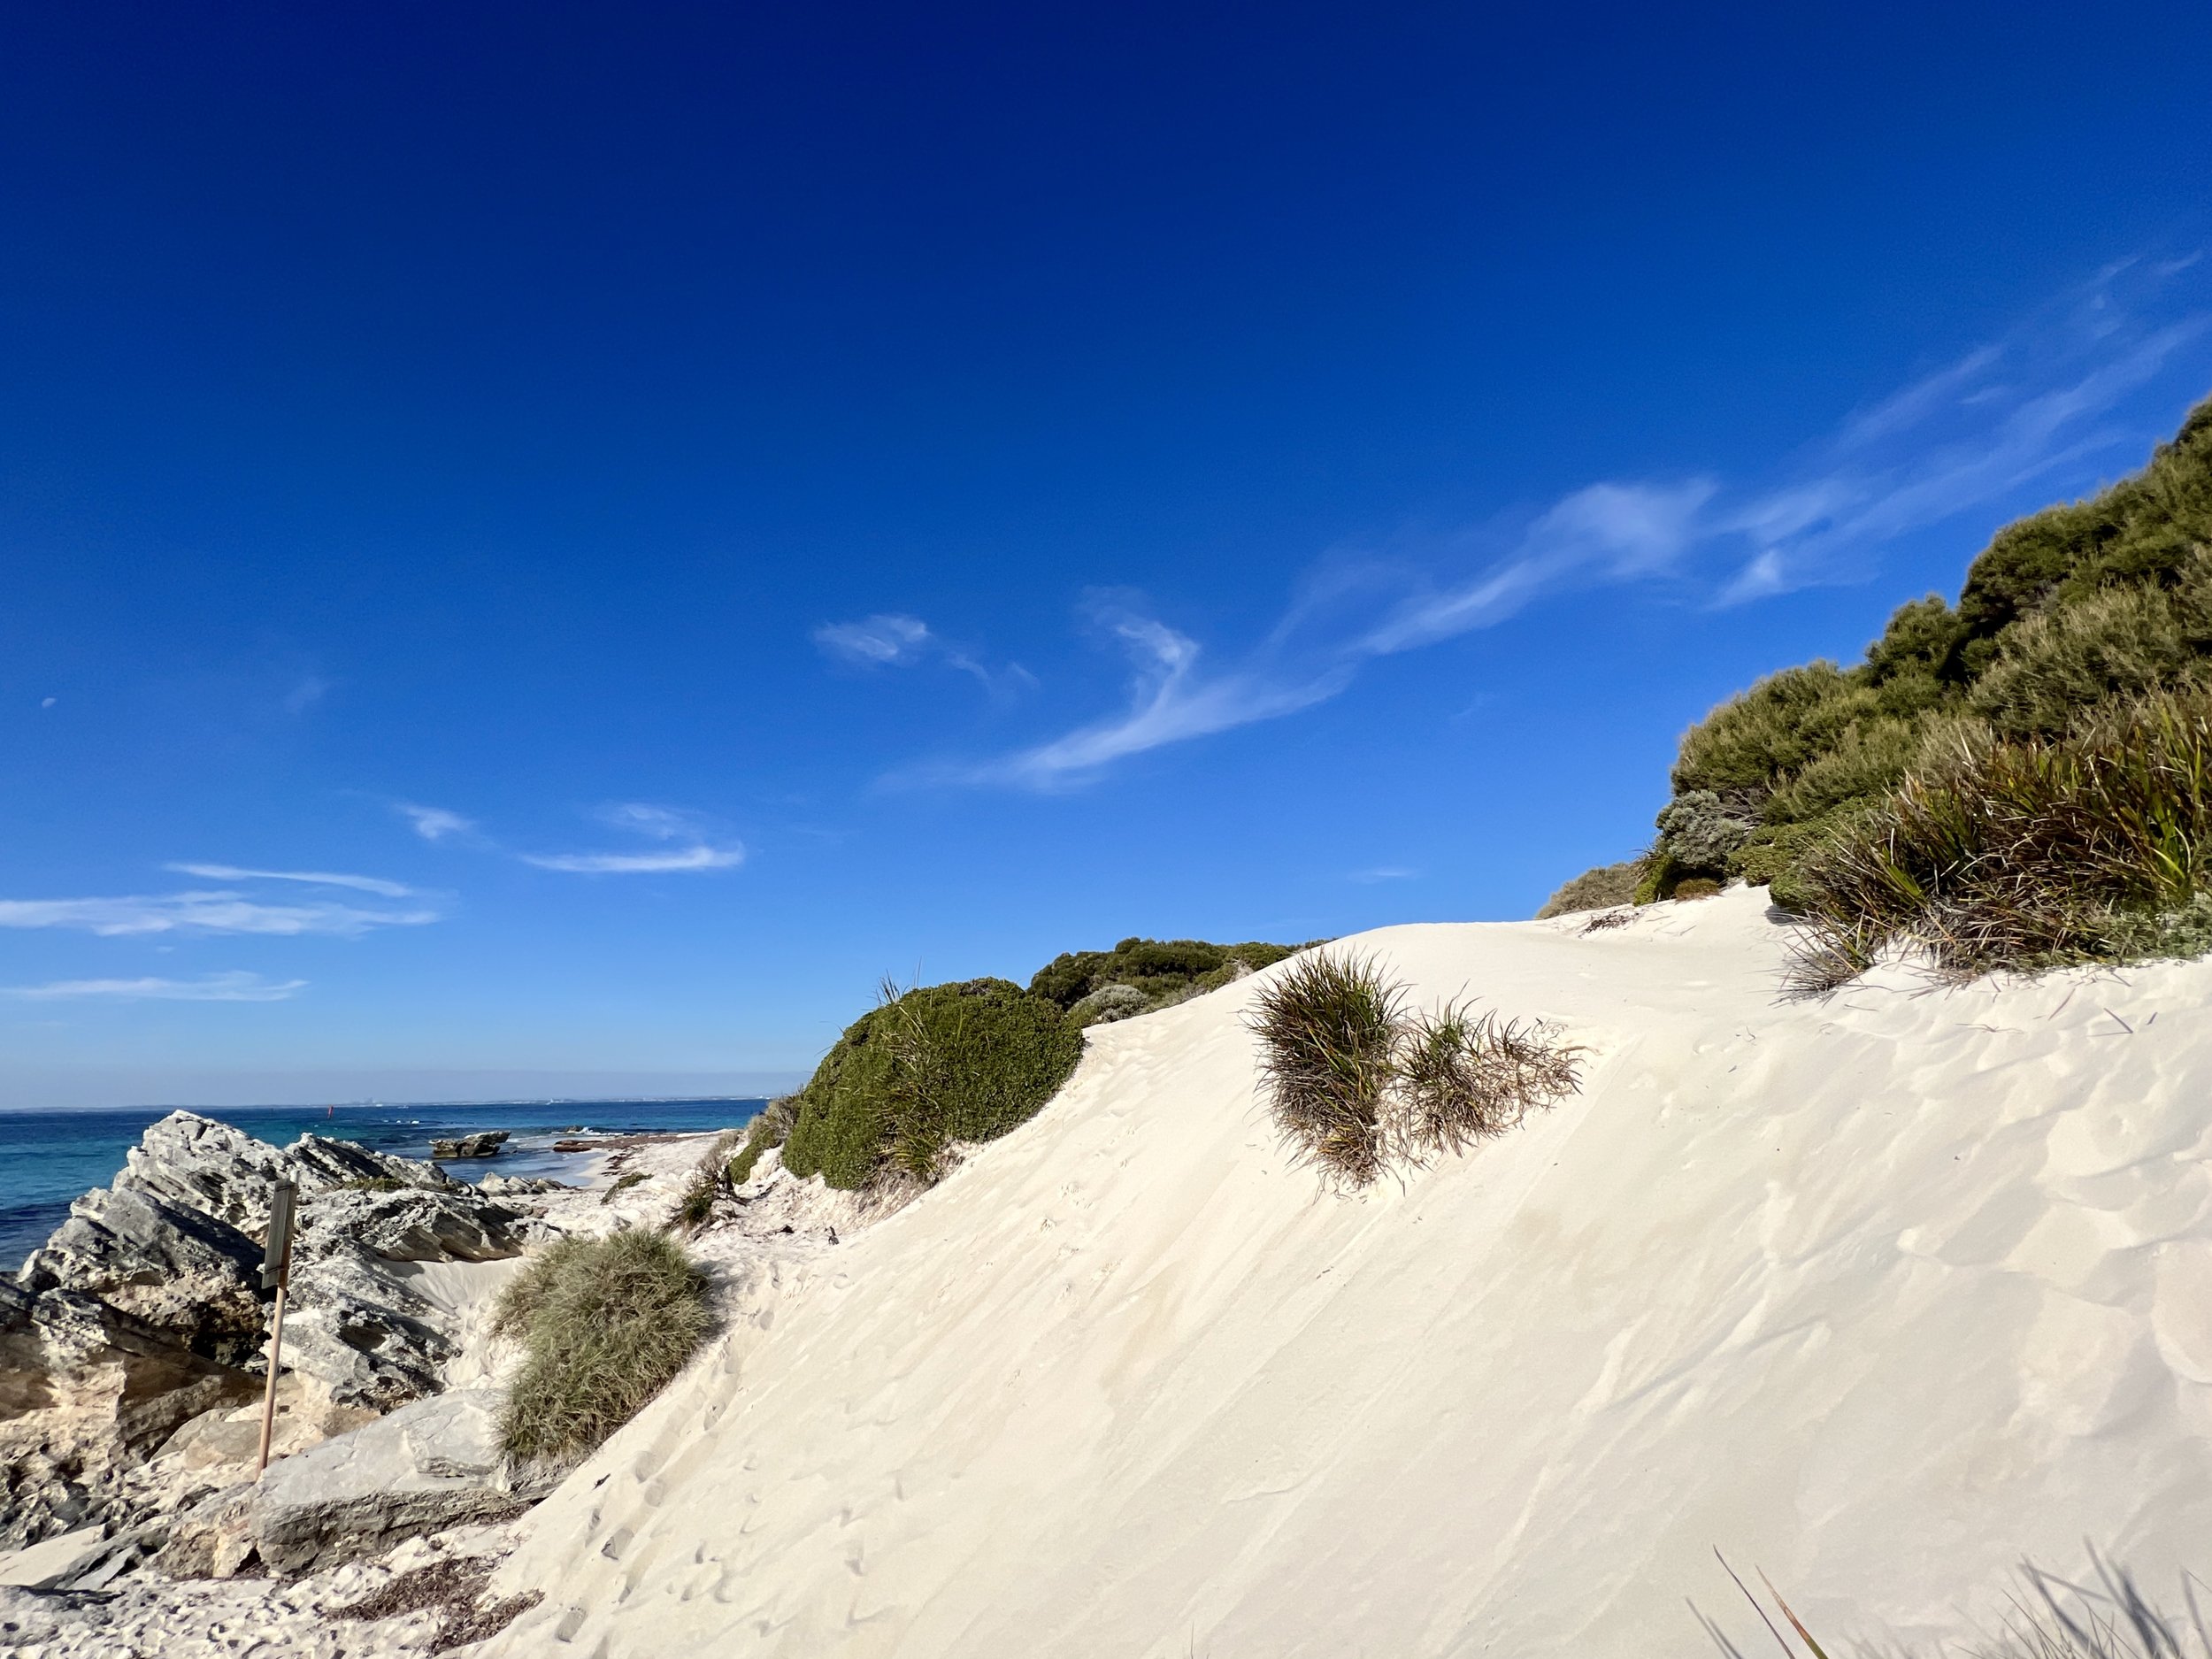 Sand dunes on Rottnest